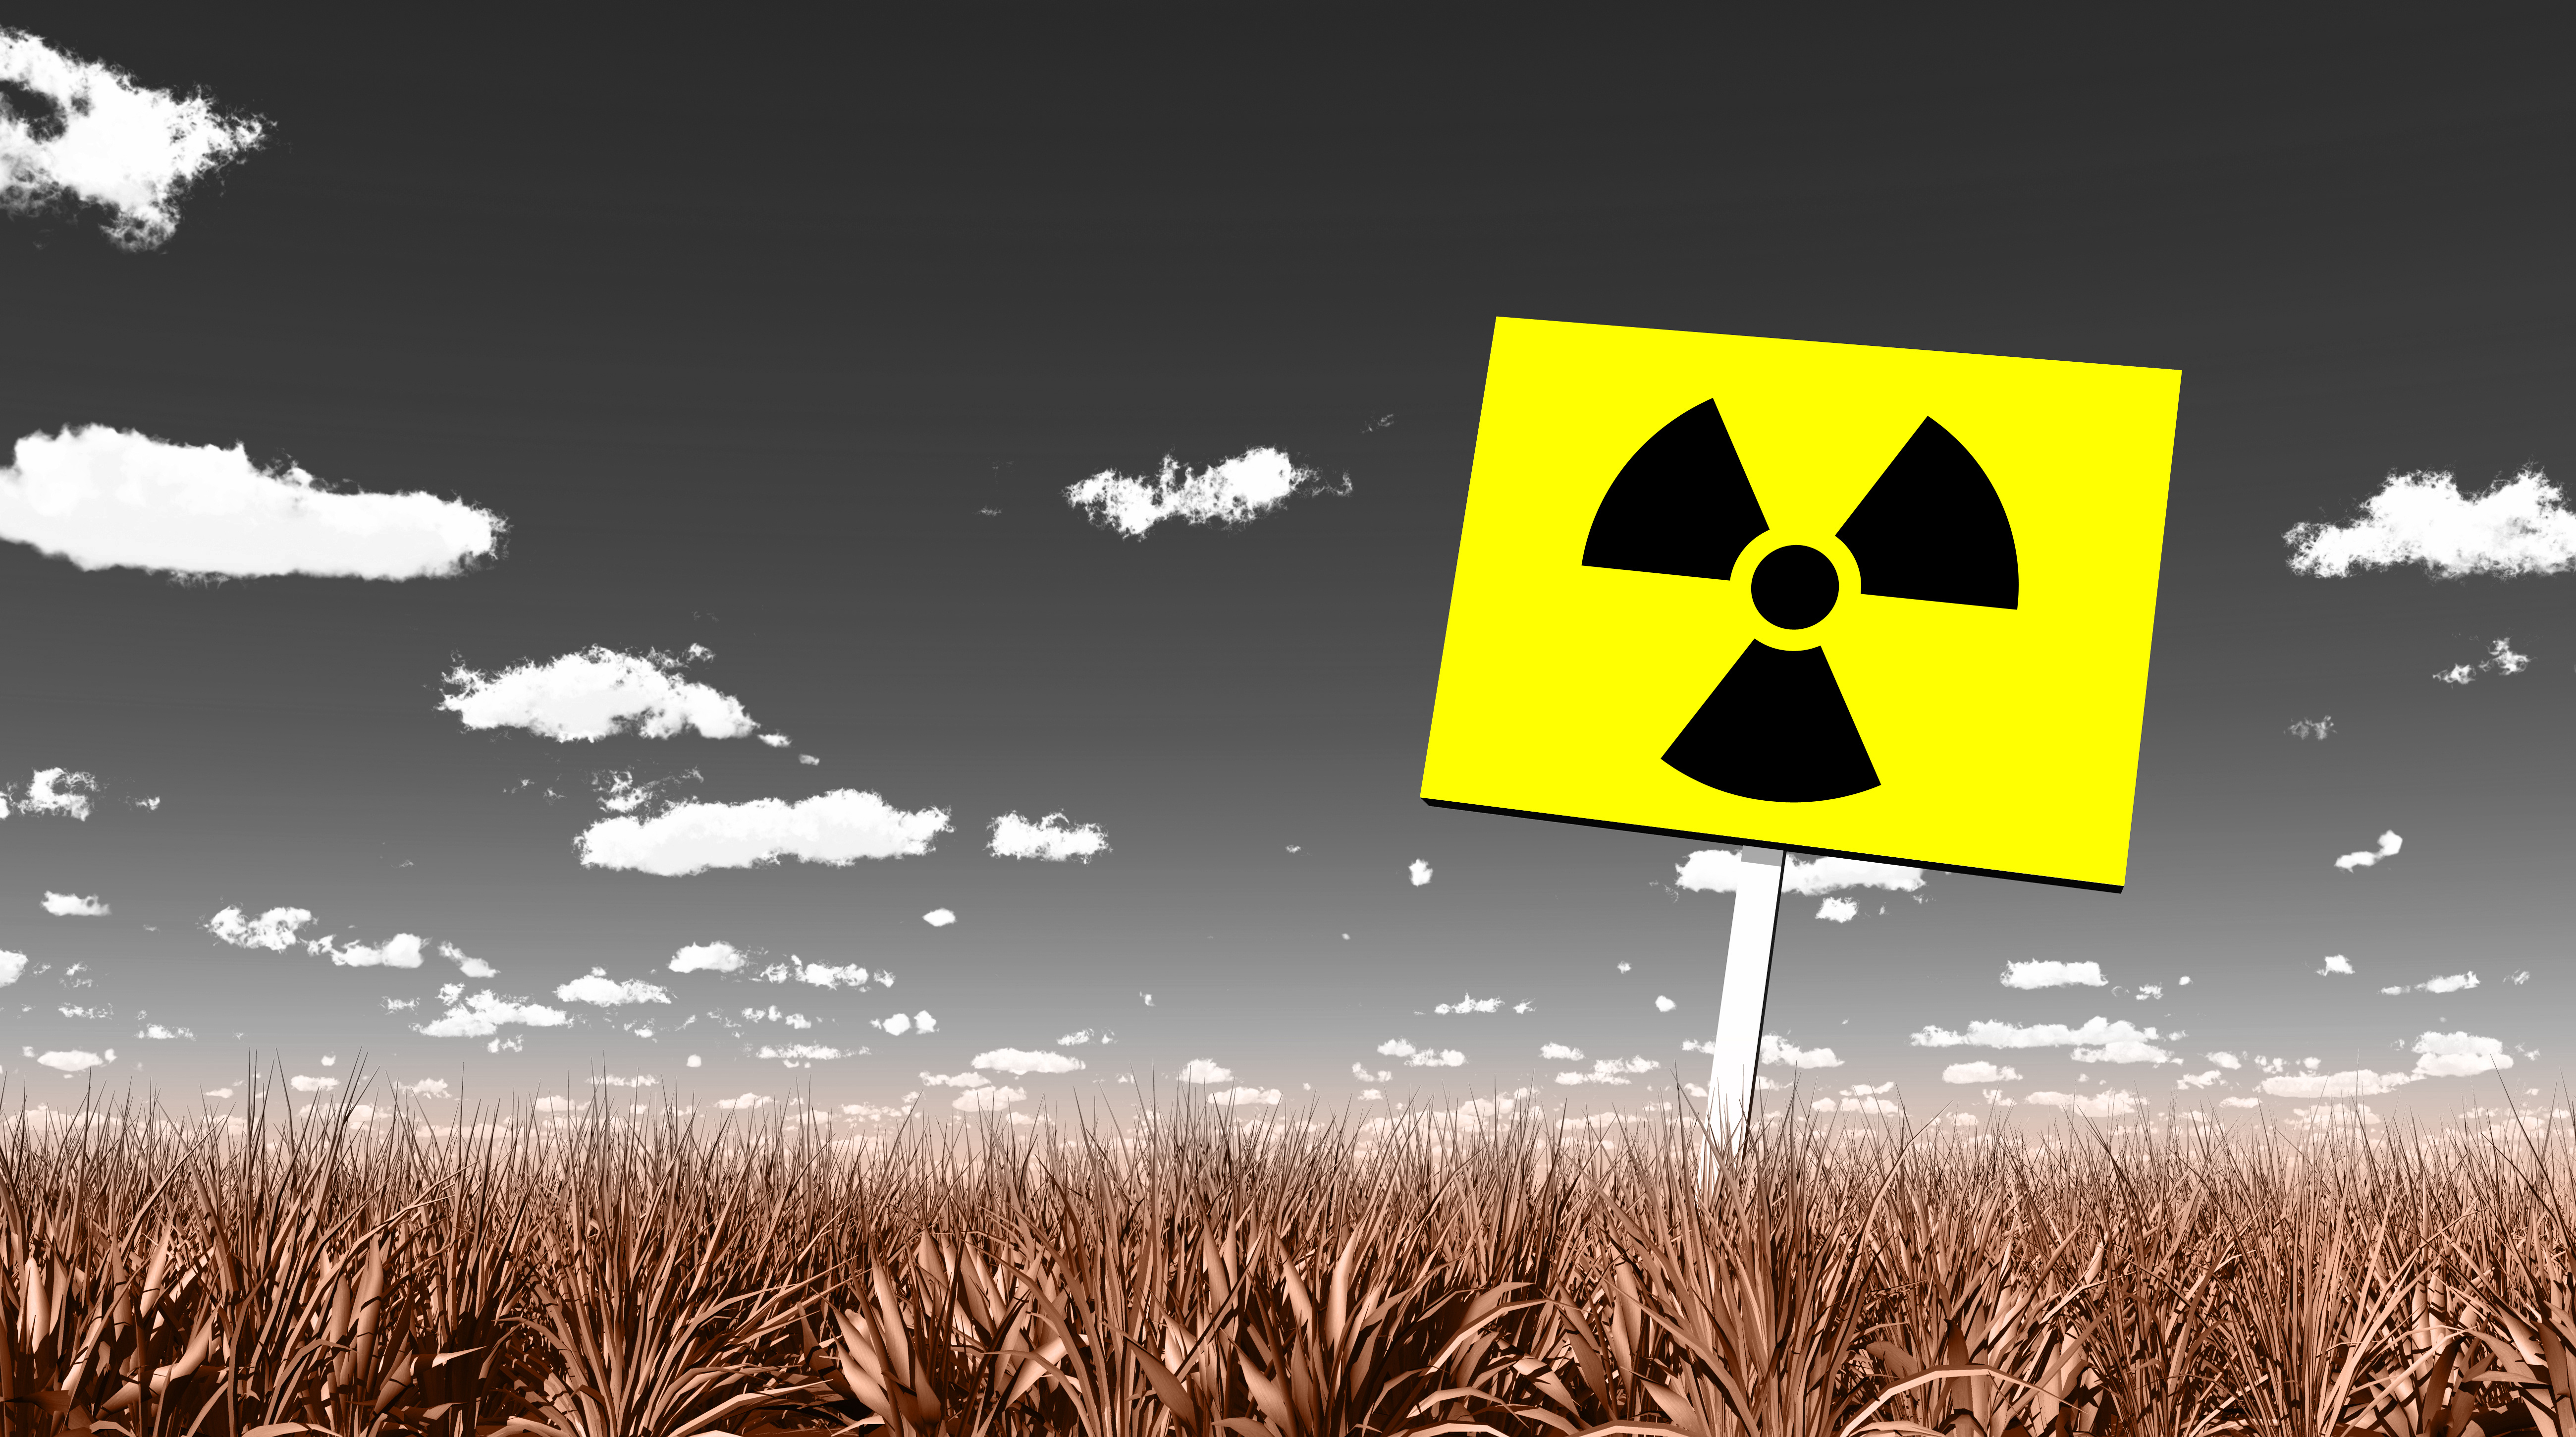 Radioaktiv verseuchtes Land - verdorrtes Gras und Strahlungspiktogramm